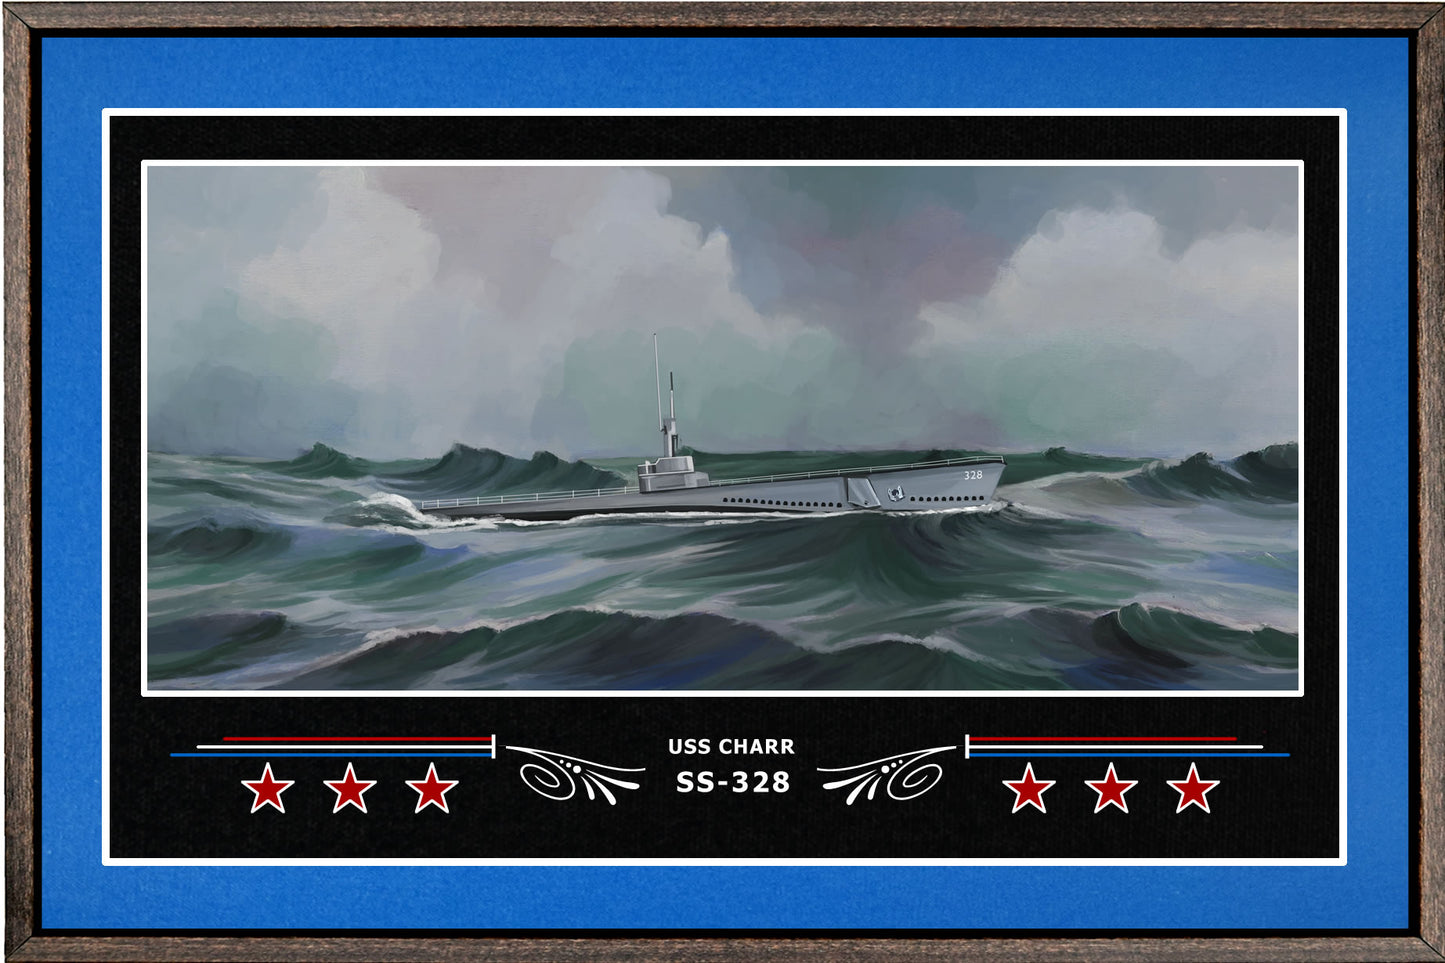 USS CHARR SS 328 BOX FRAMED CANVAS ART BLUE